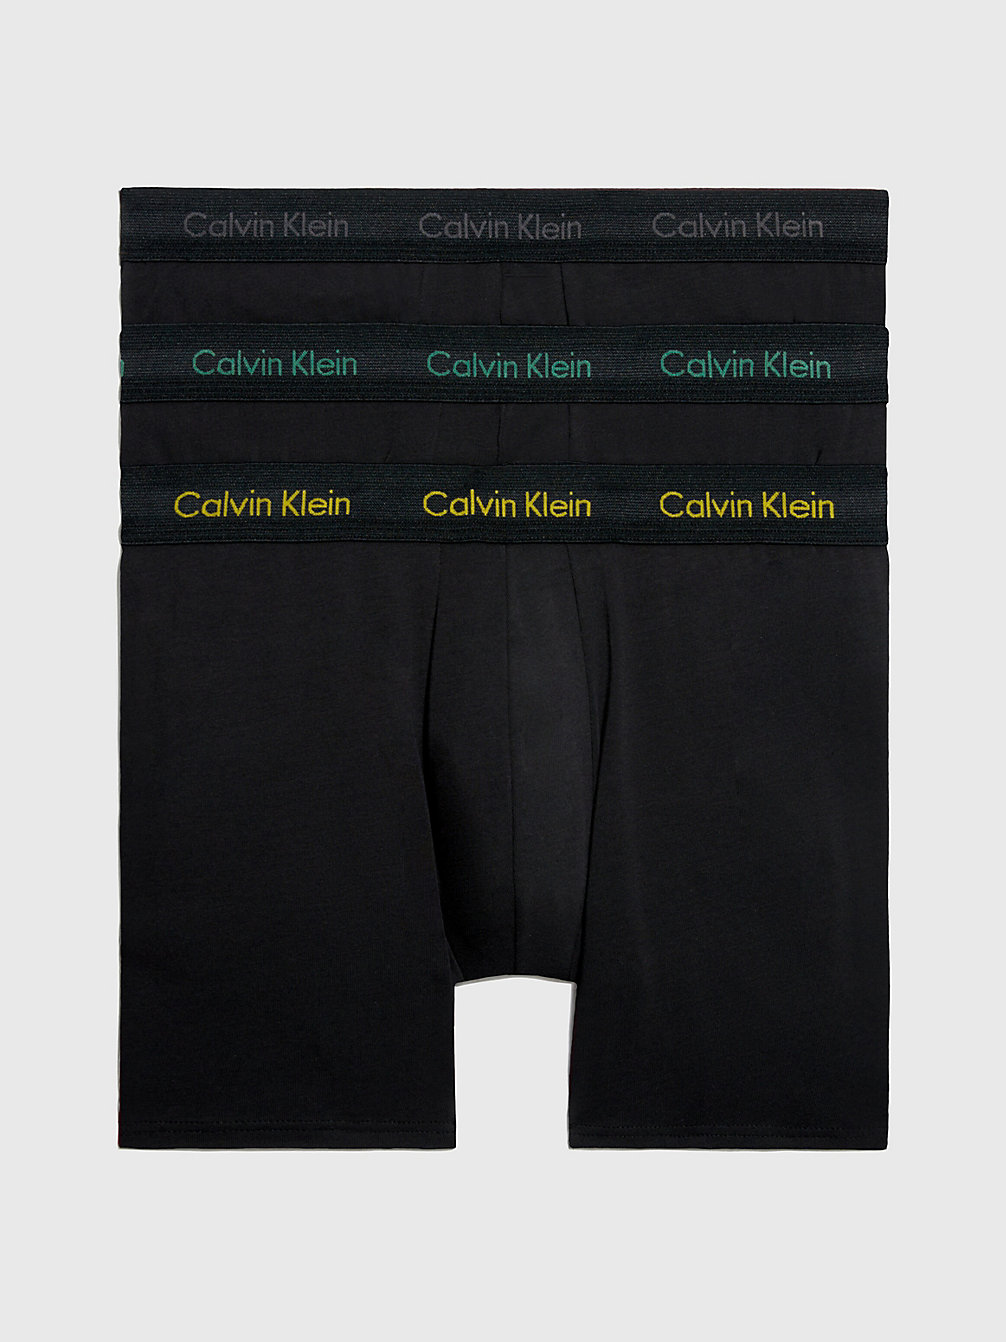 B-CHRCL HTHR, MRNGSD YW, FLG GRN LG 3 Pack Boxer Briefs - Cotton Stretch undefined men Calvin Klein